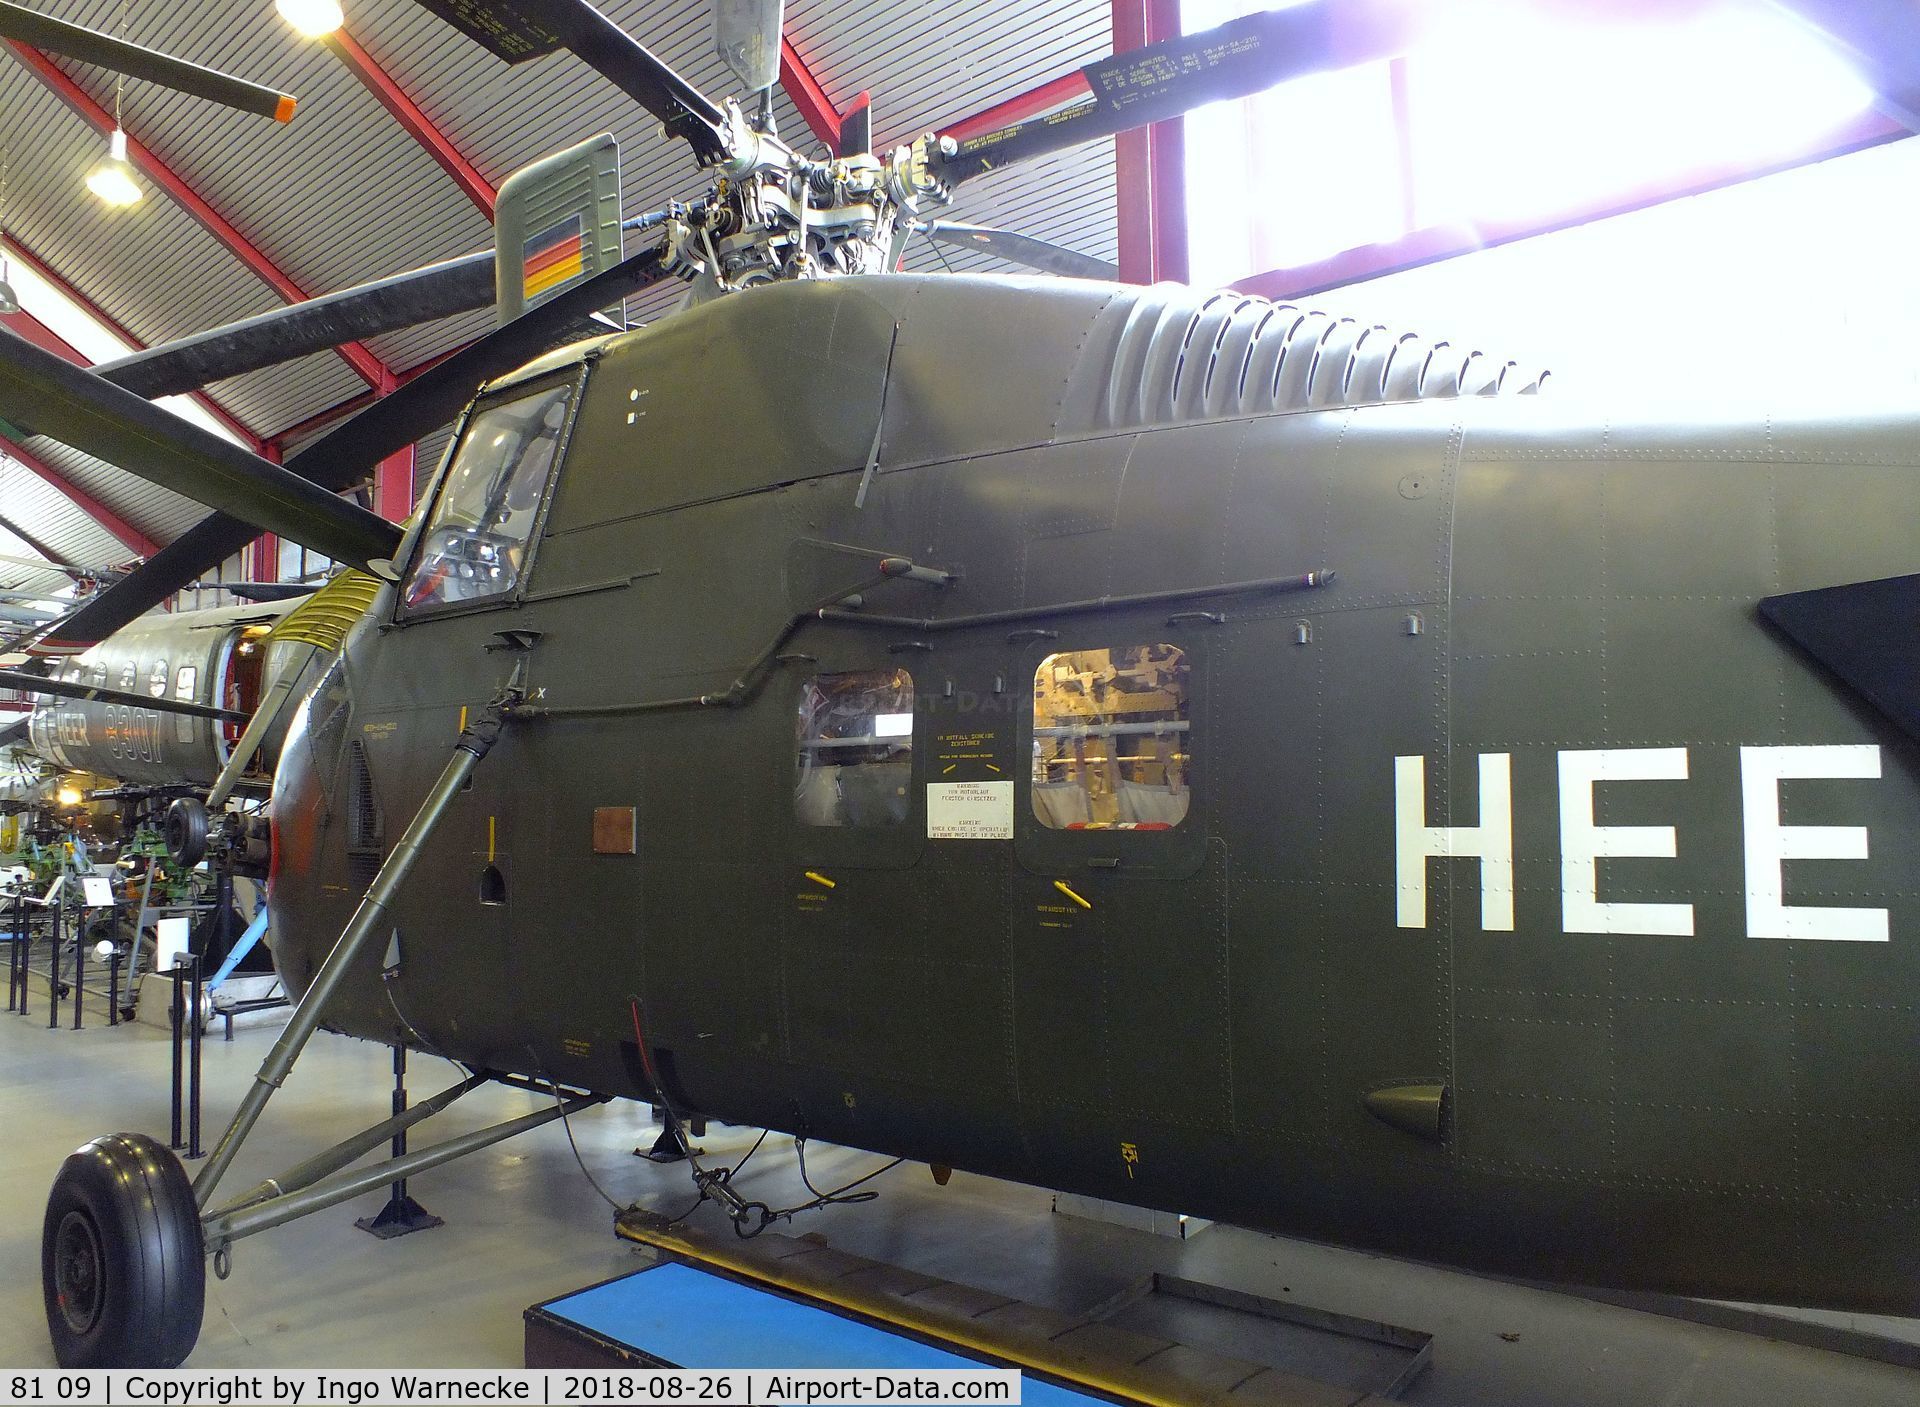 81 09, Sikorsky H-34G Choctaw C/N 58-1679, Sikorsky H-34G Choctaw at the Hubschraubermuseum (helicopter museum), Bückeburg